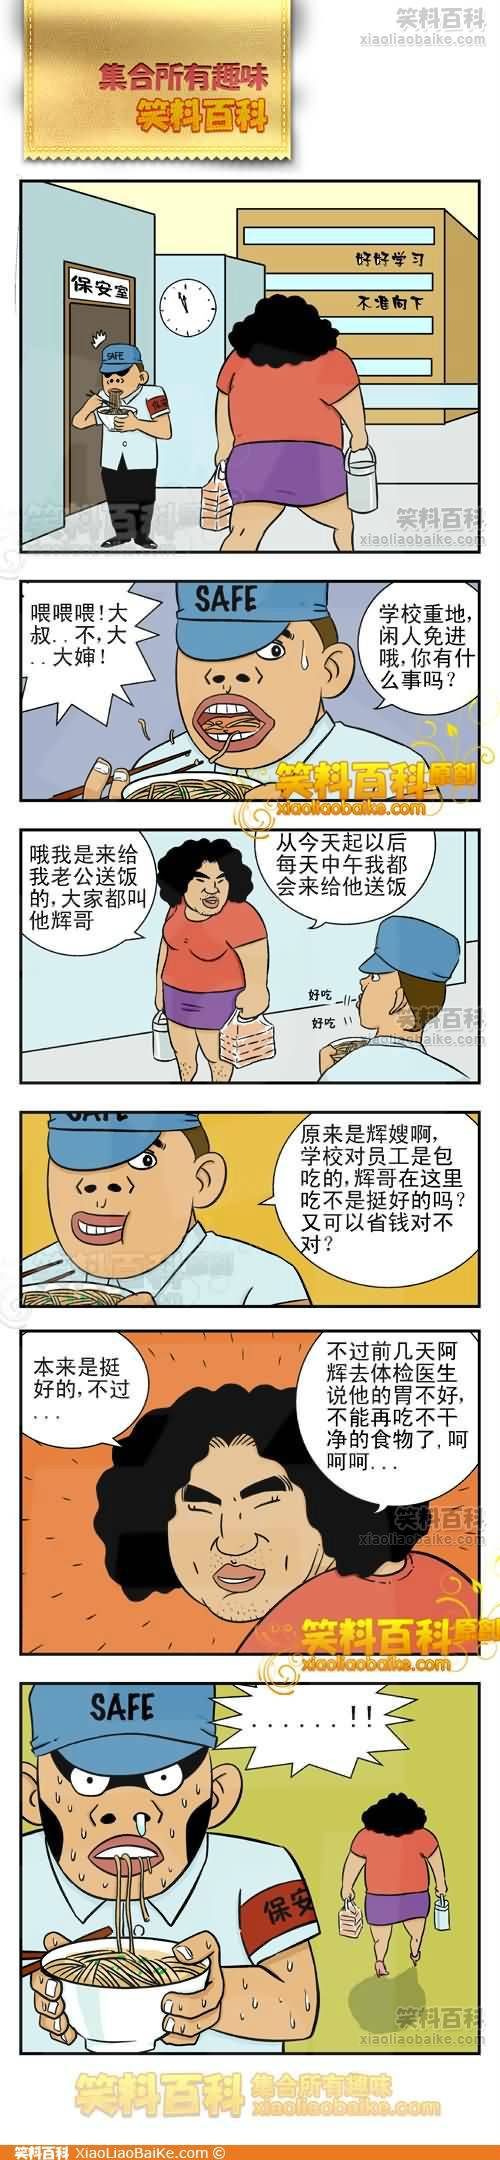 邪恶漫画爆笑囧图第268刊：素质道理的背后